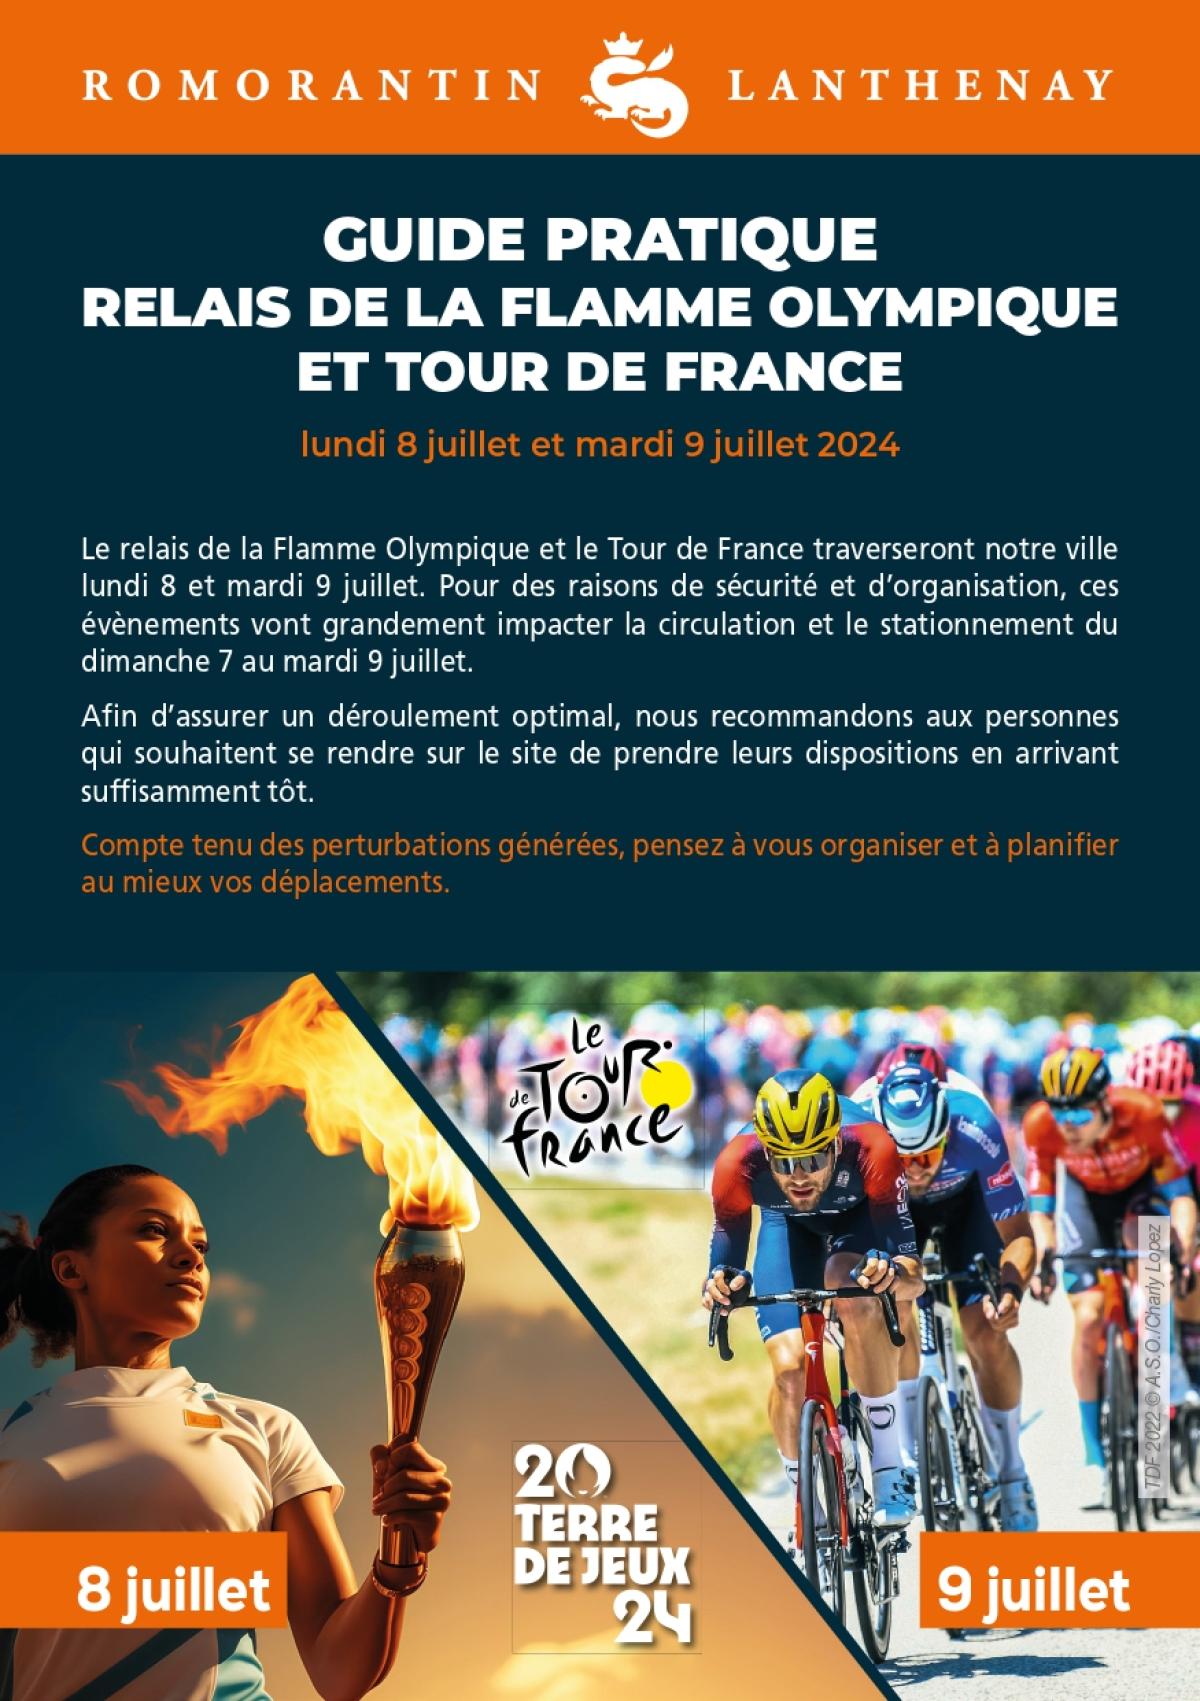 Guide pratique Relais de la flamme olympique et Tour de France